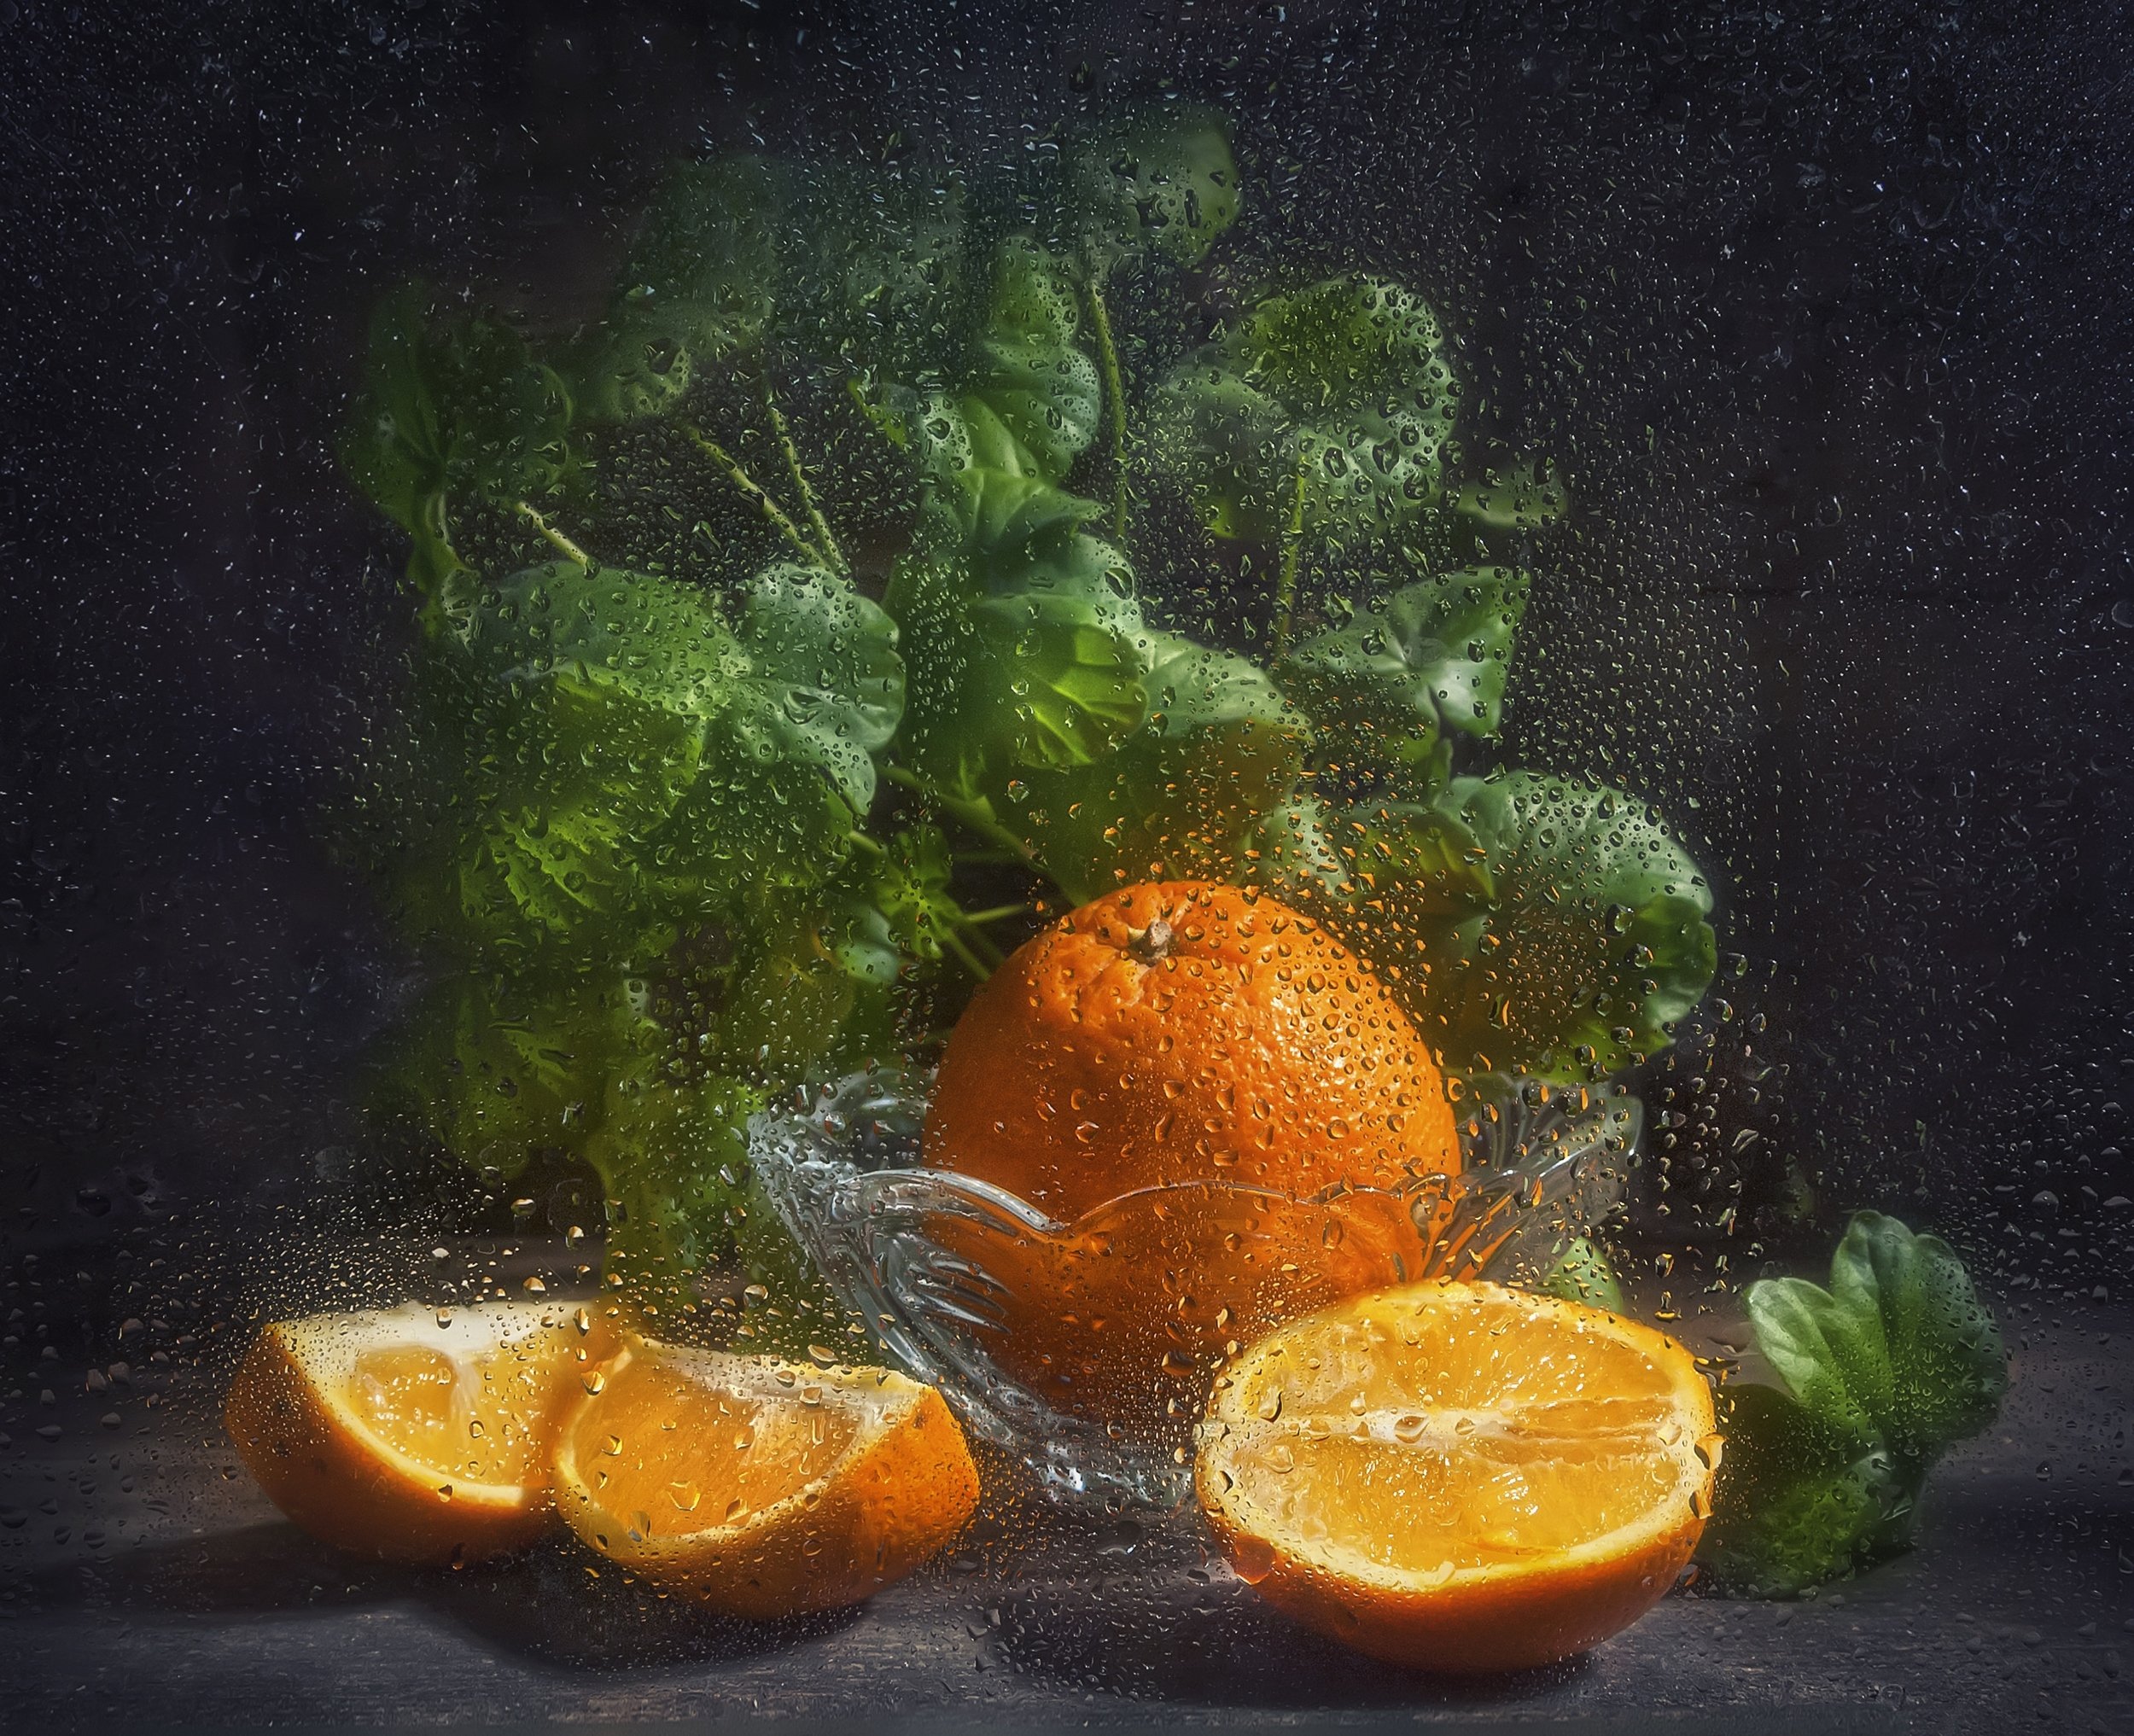 апельсин,витамин,оранжевый,сочный,растение,фрукт,листья герани,капли на стекле,тёмный, Владимир Володин